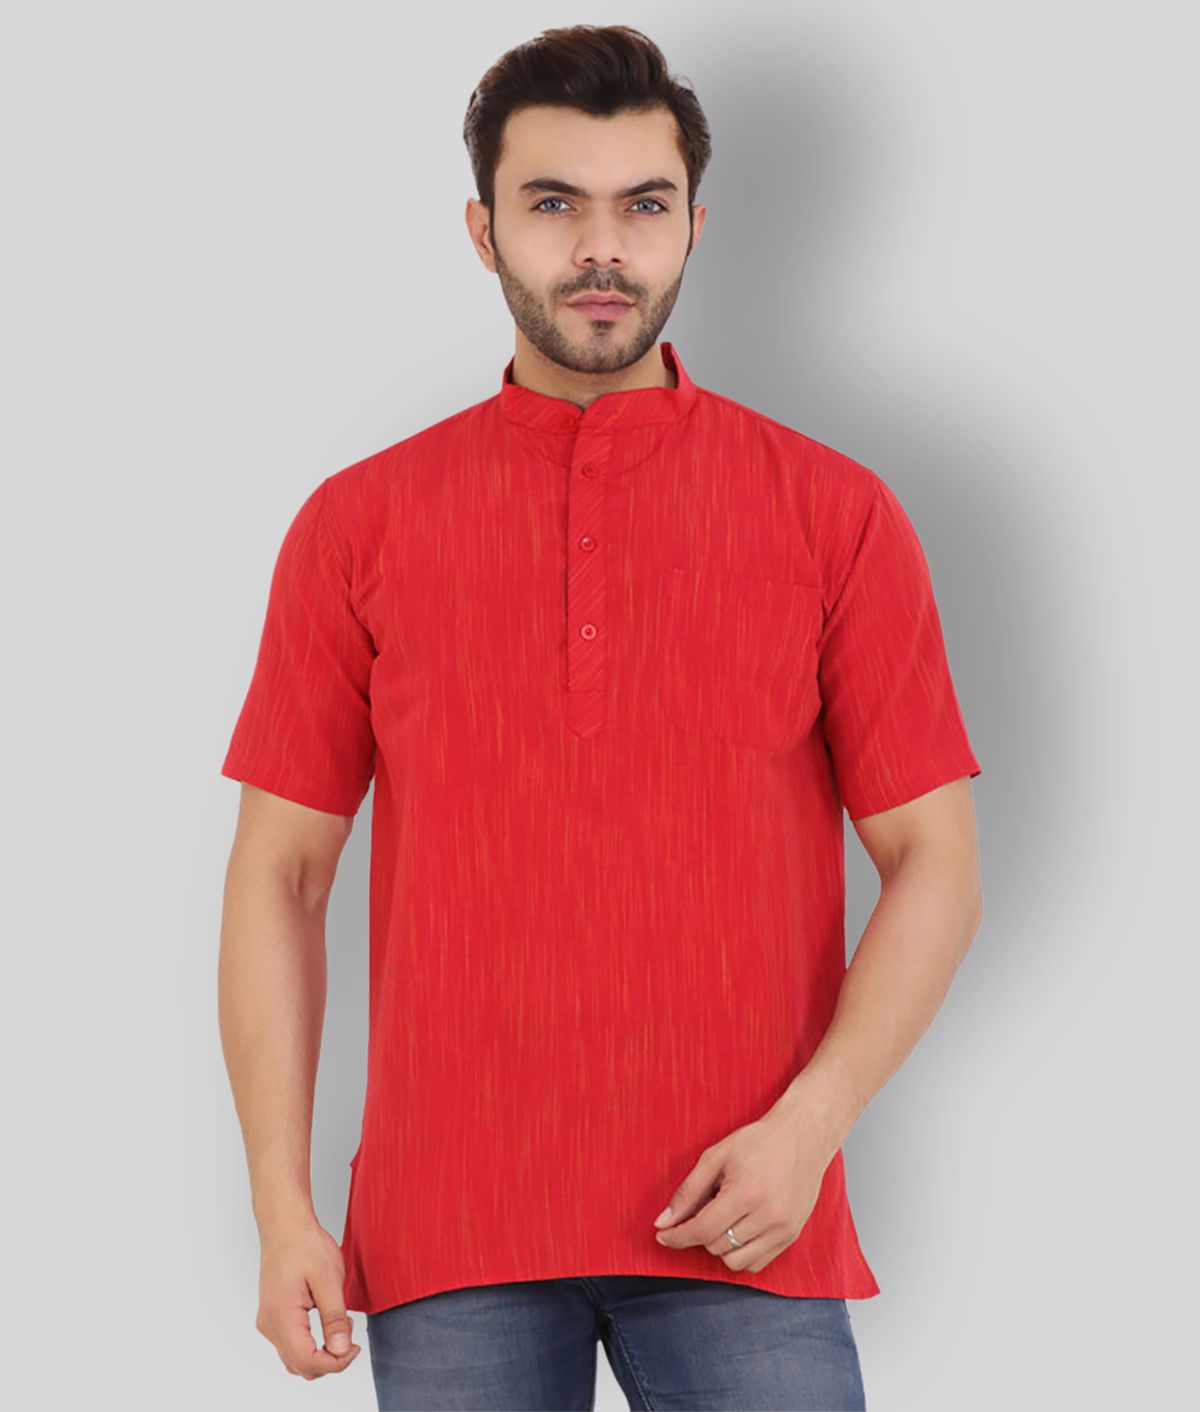     			Latest Chikan - Red Cotton Men's Shirt Style Kurta ( Pack of 1 )